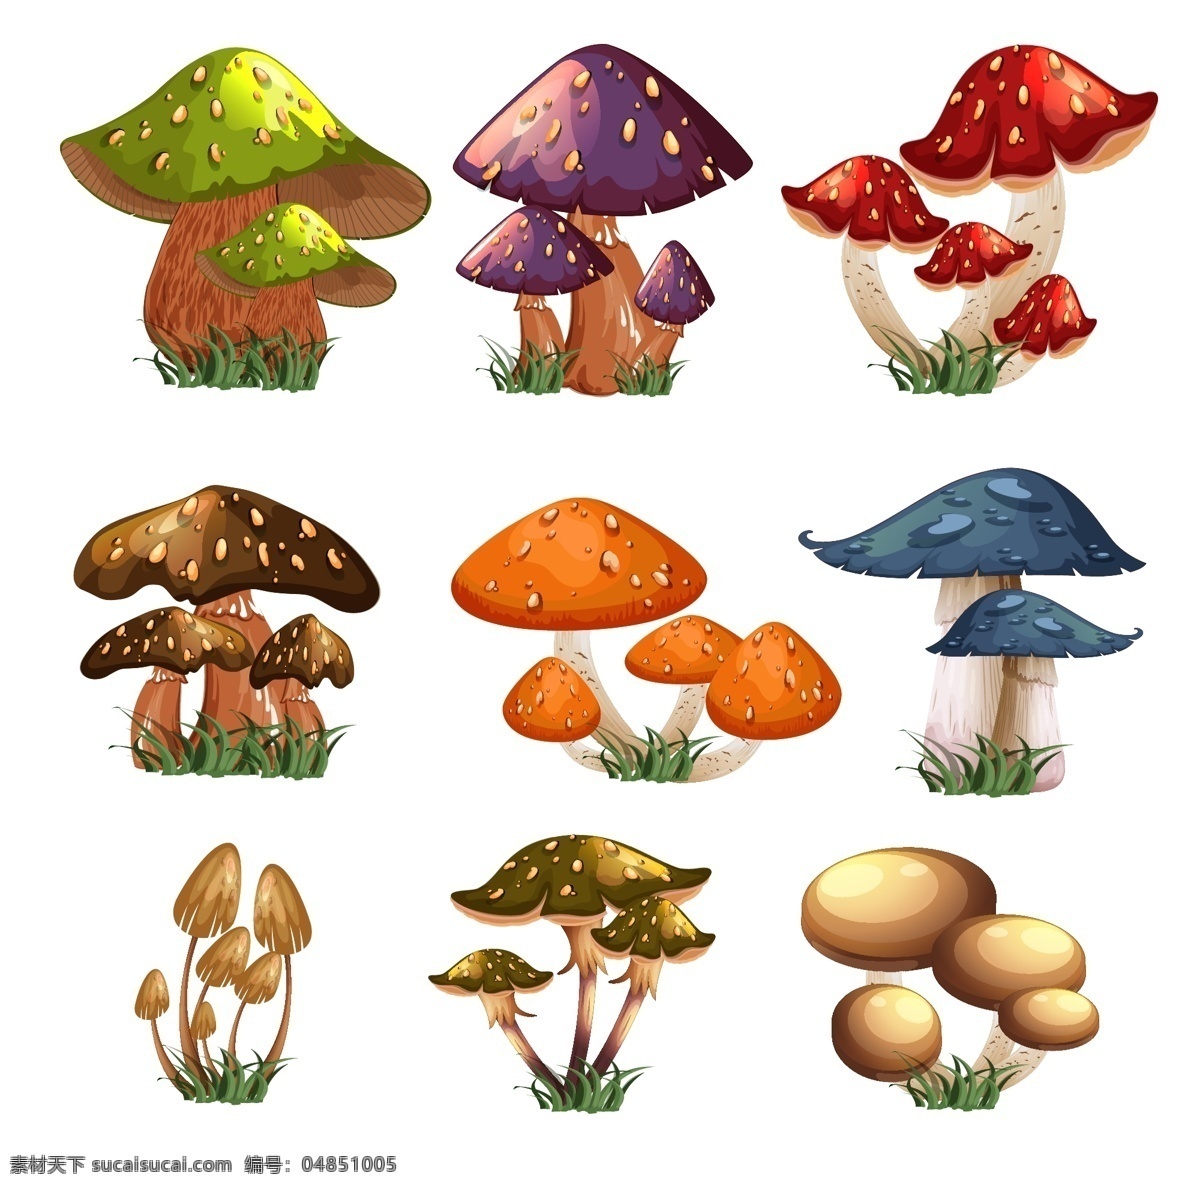 组 卡通 蘑菇 矢量 卡通蘑菇 设计矢量素材 彩色 草地 矢量图 ai格式 生物世界 花草